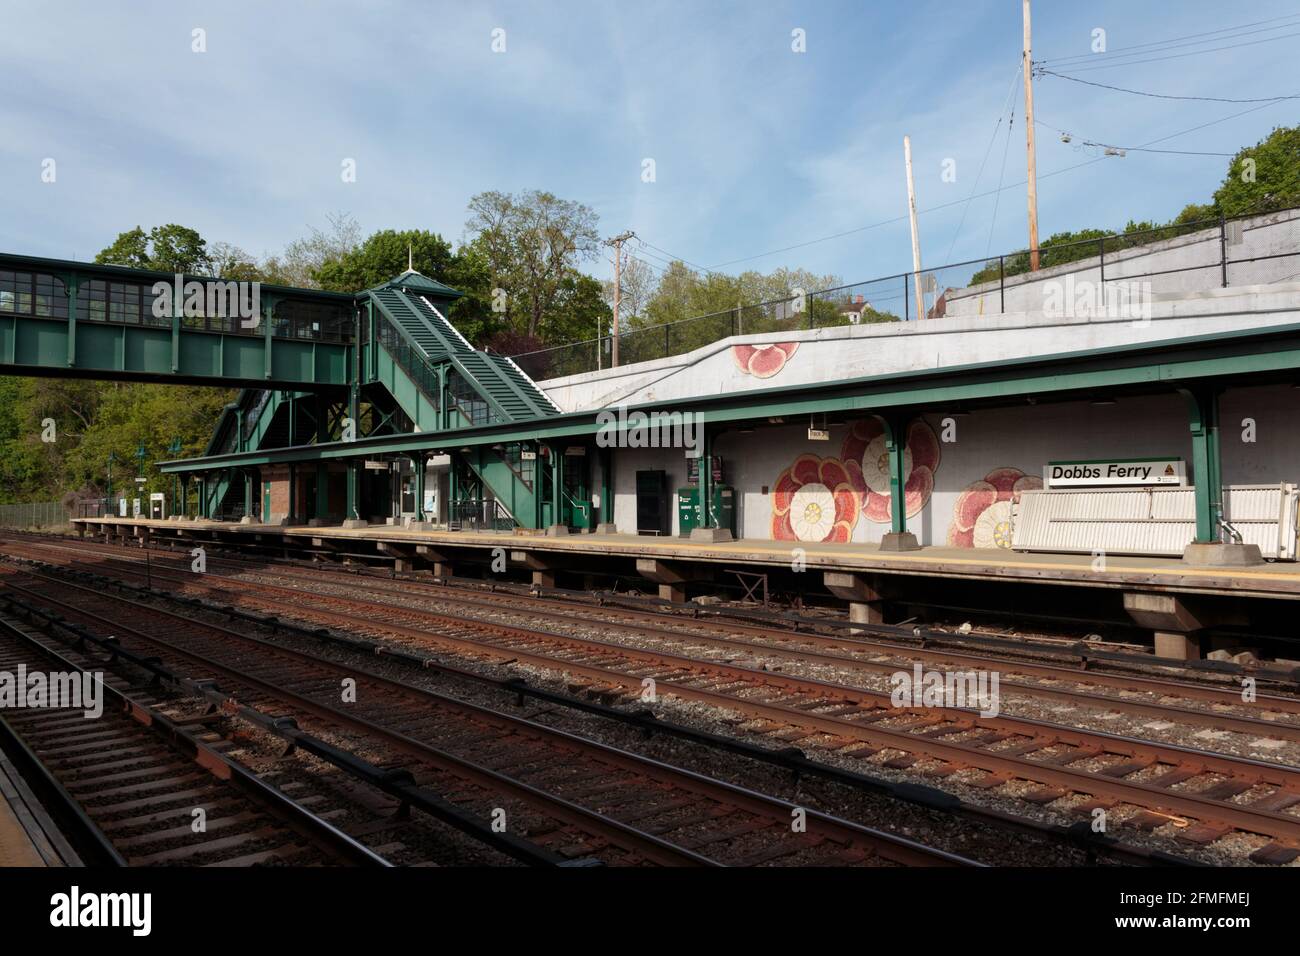 Stazione ferroviaria di Dobbs Ferry Metro North, piccola città di pendolari nella parte settentrionale dello stato di New York, vista sui binari ferroviari con il cavalcavia pedonale sullo sfondo Foto Stock